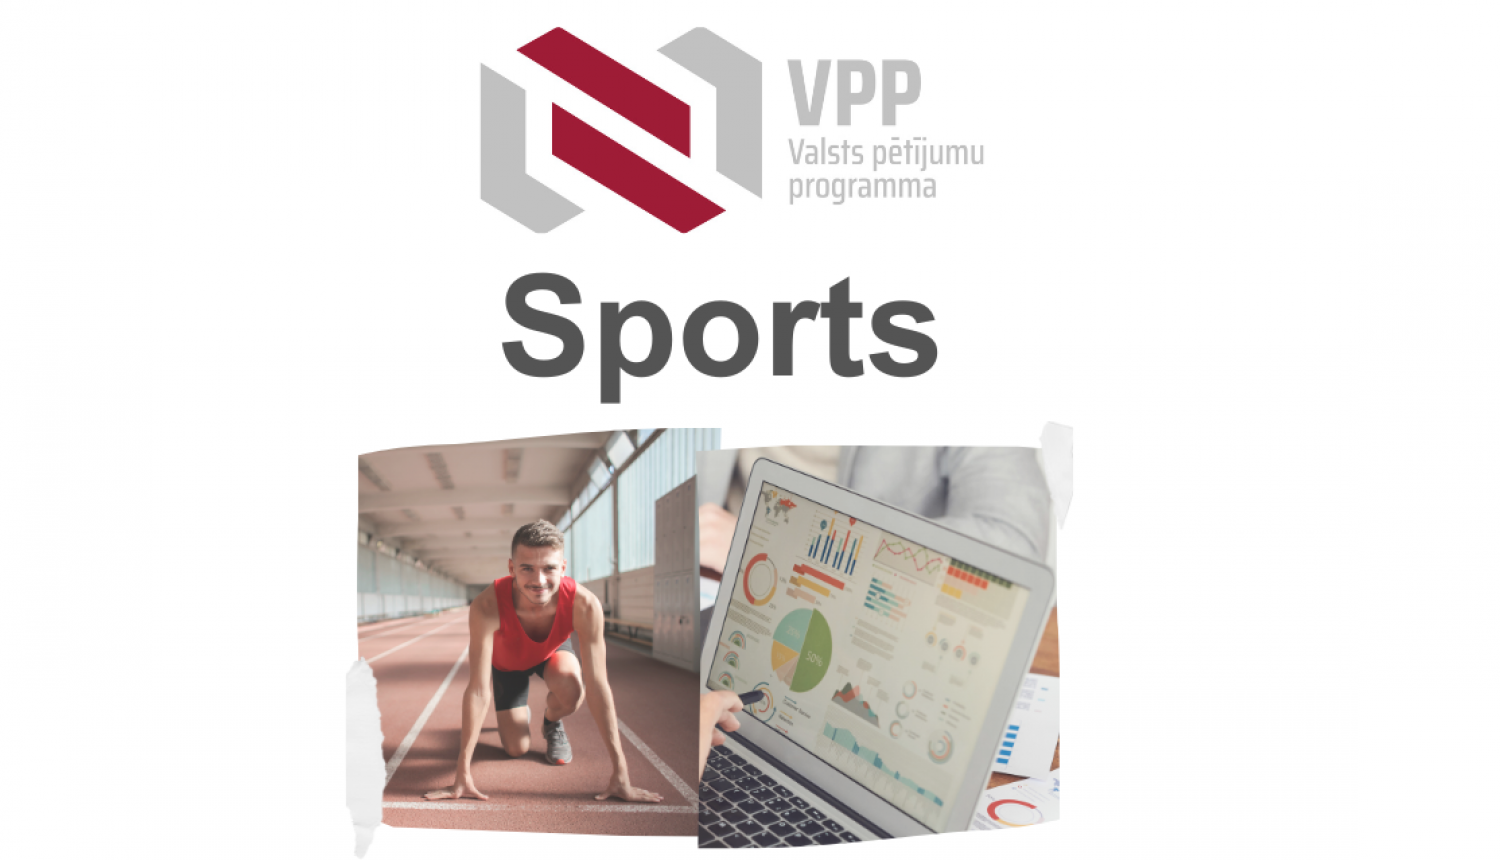 VPP sports